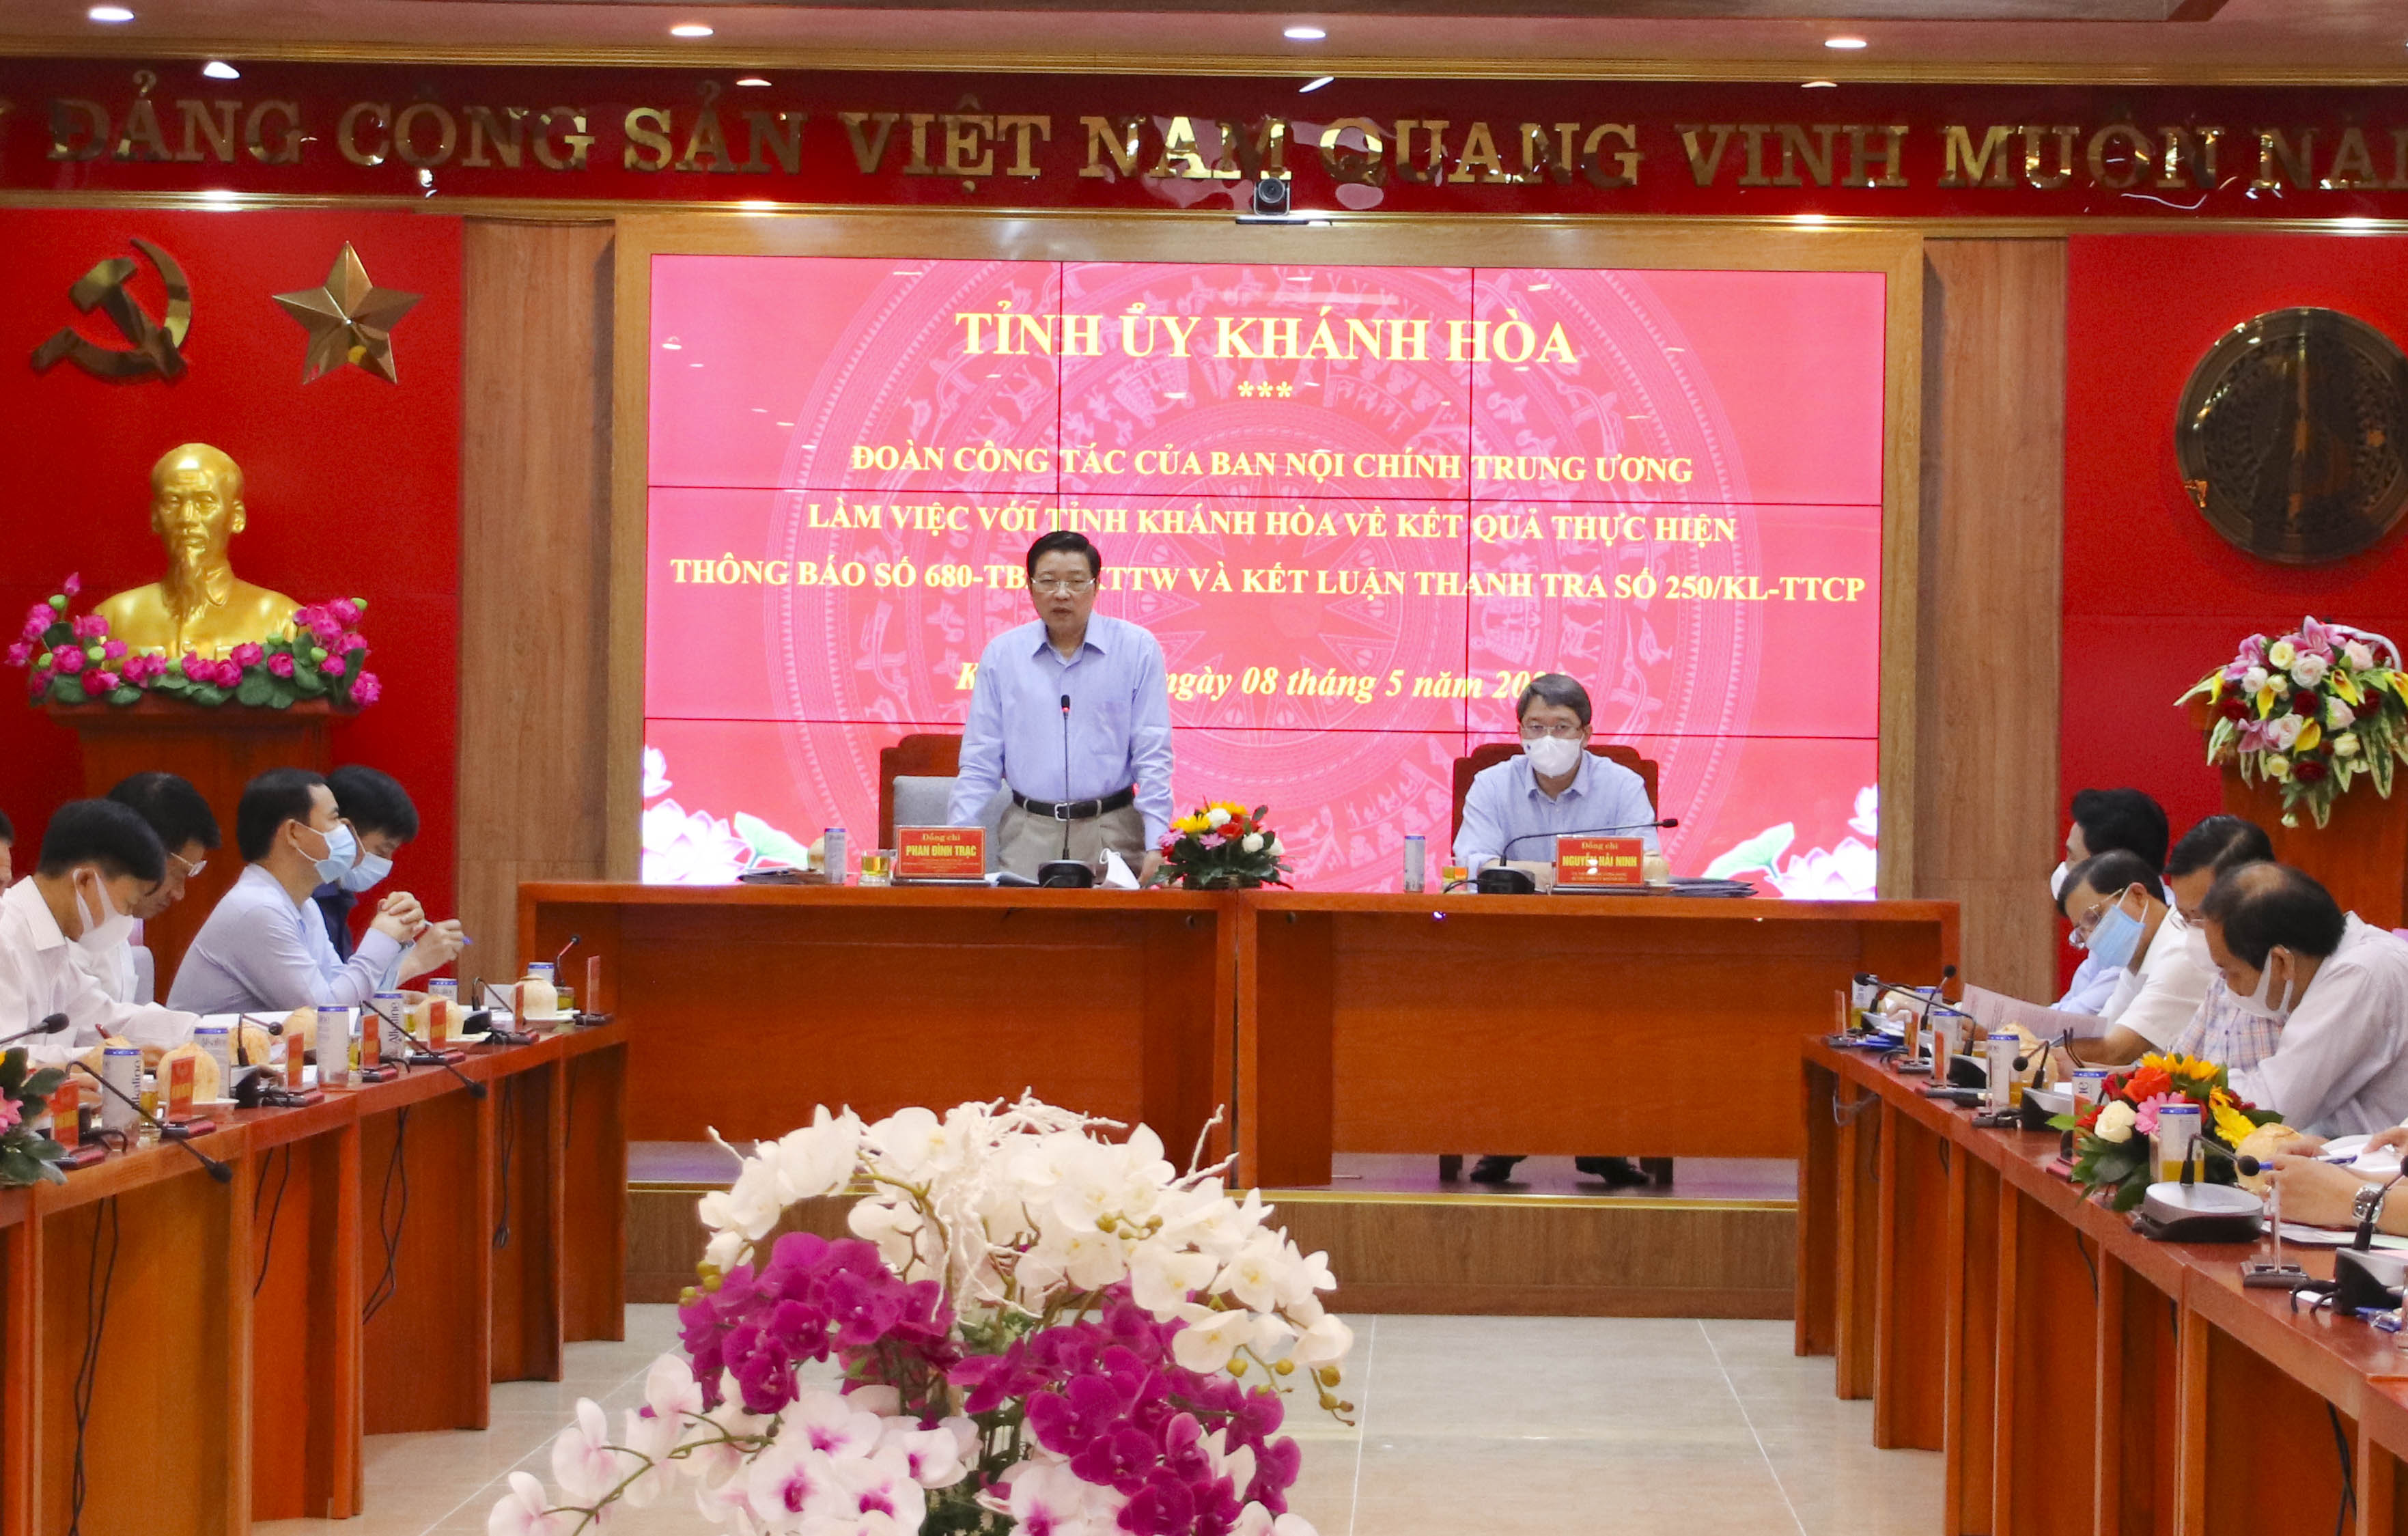 Trưởng Ban nội chính Trung ương: Làm việc với lãnh đạo tỉnh Khánh Hòa